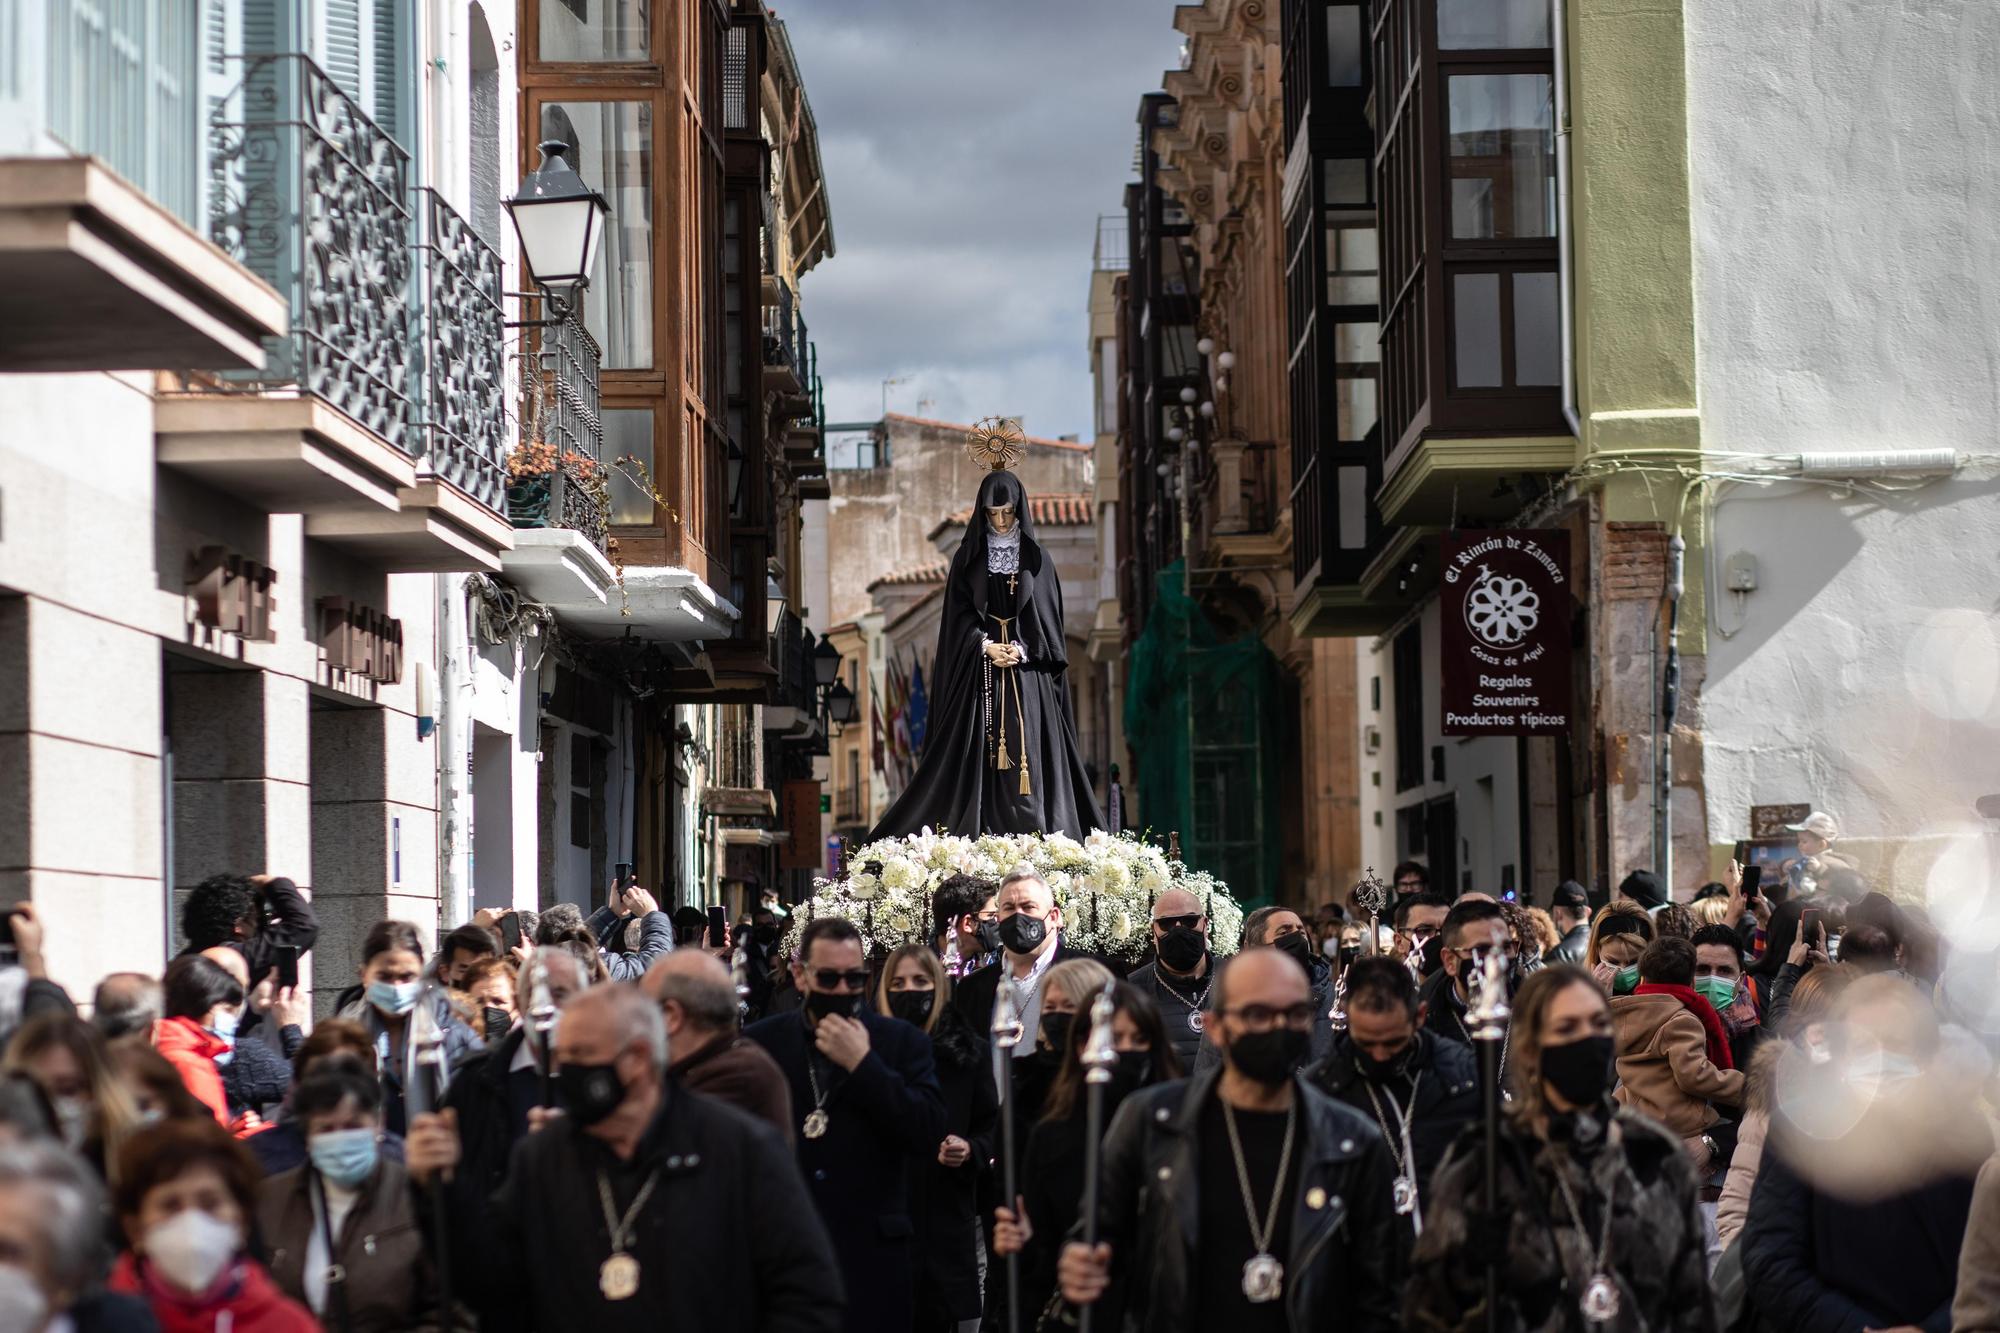 La Virgen procesiona por las calles de Zamora.